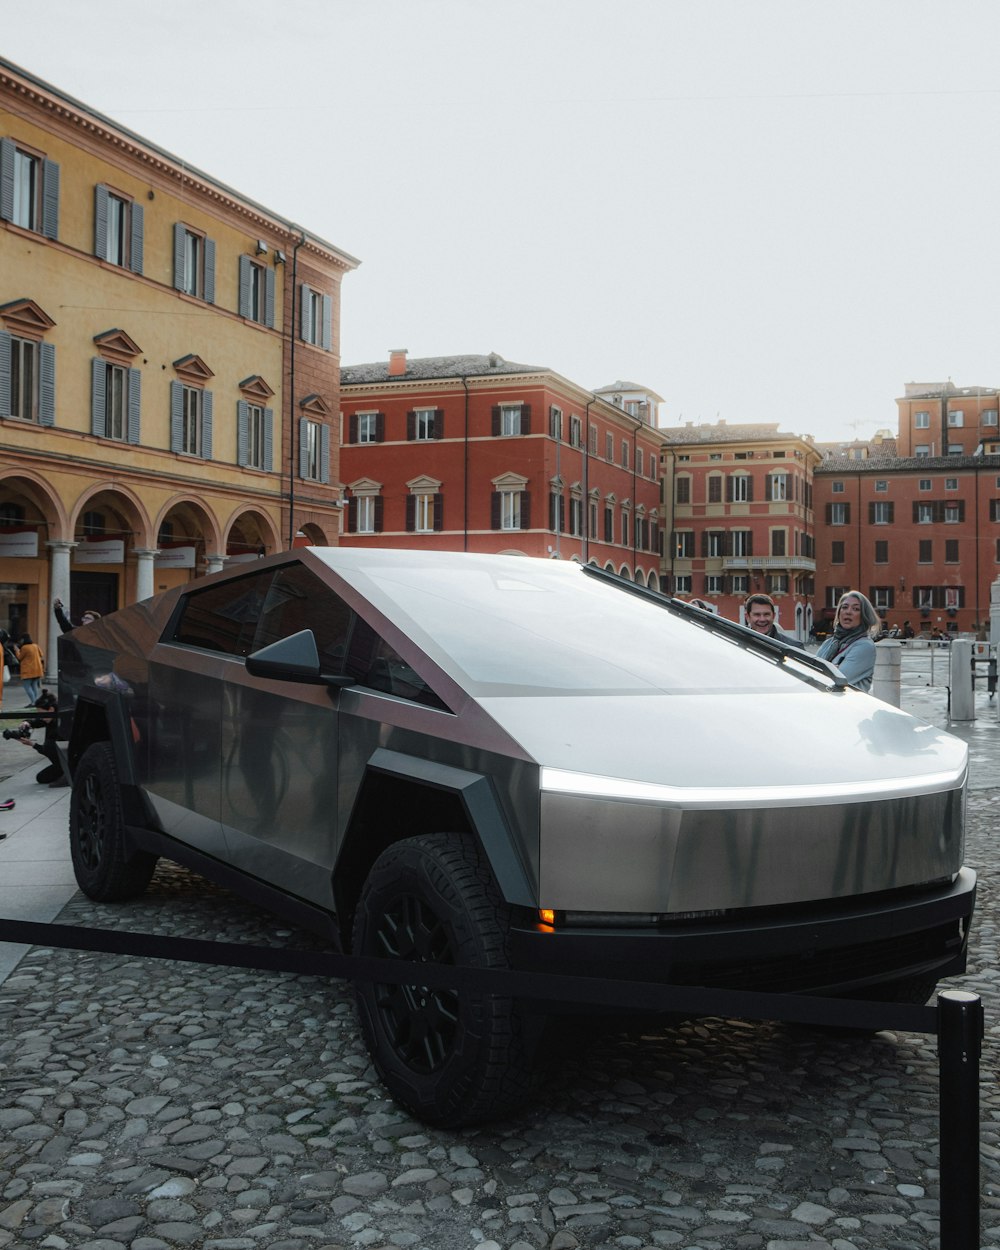 Un coche futurista está aparcado en una calle empedrada